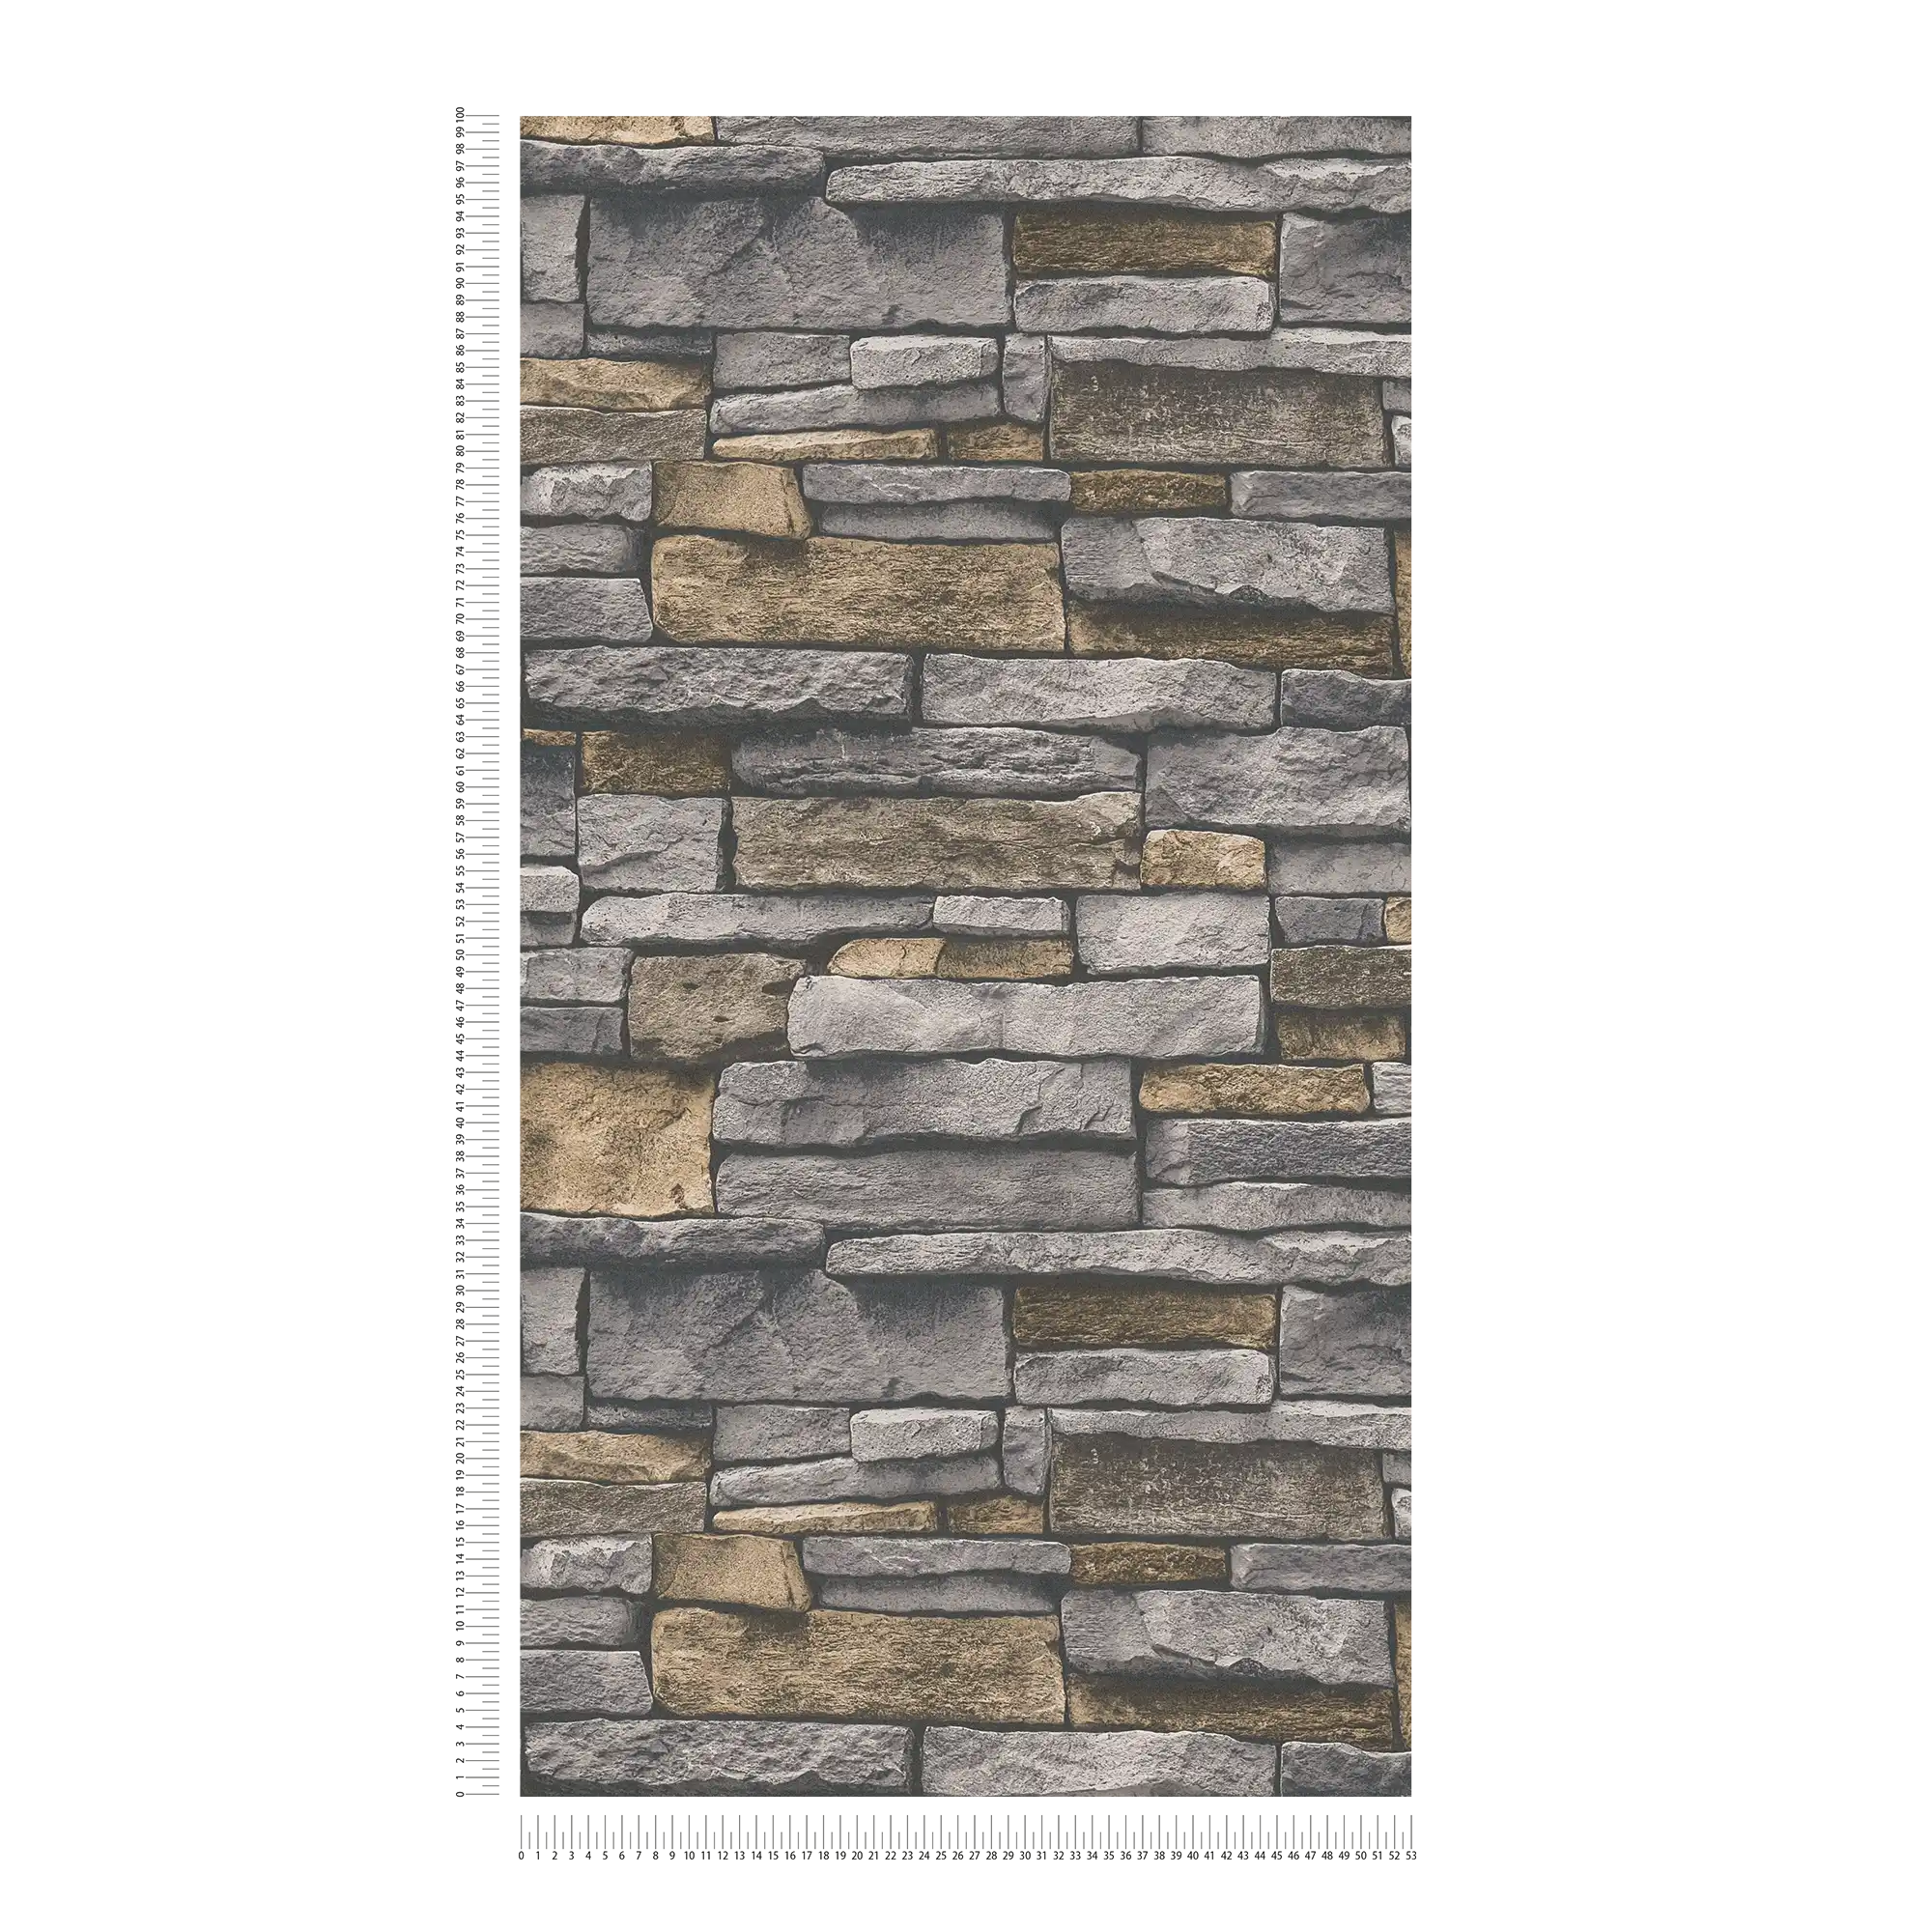             Papier peint intissé imitation pierre avec mur en pierre naturelle - gris, beige
        